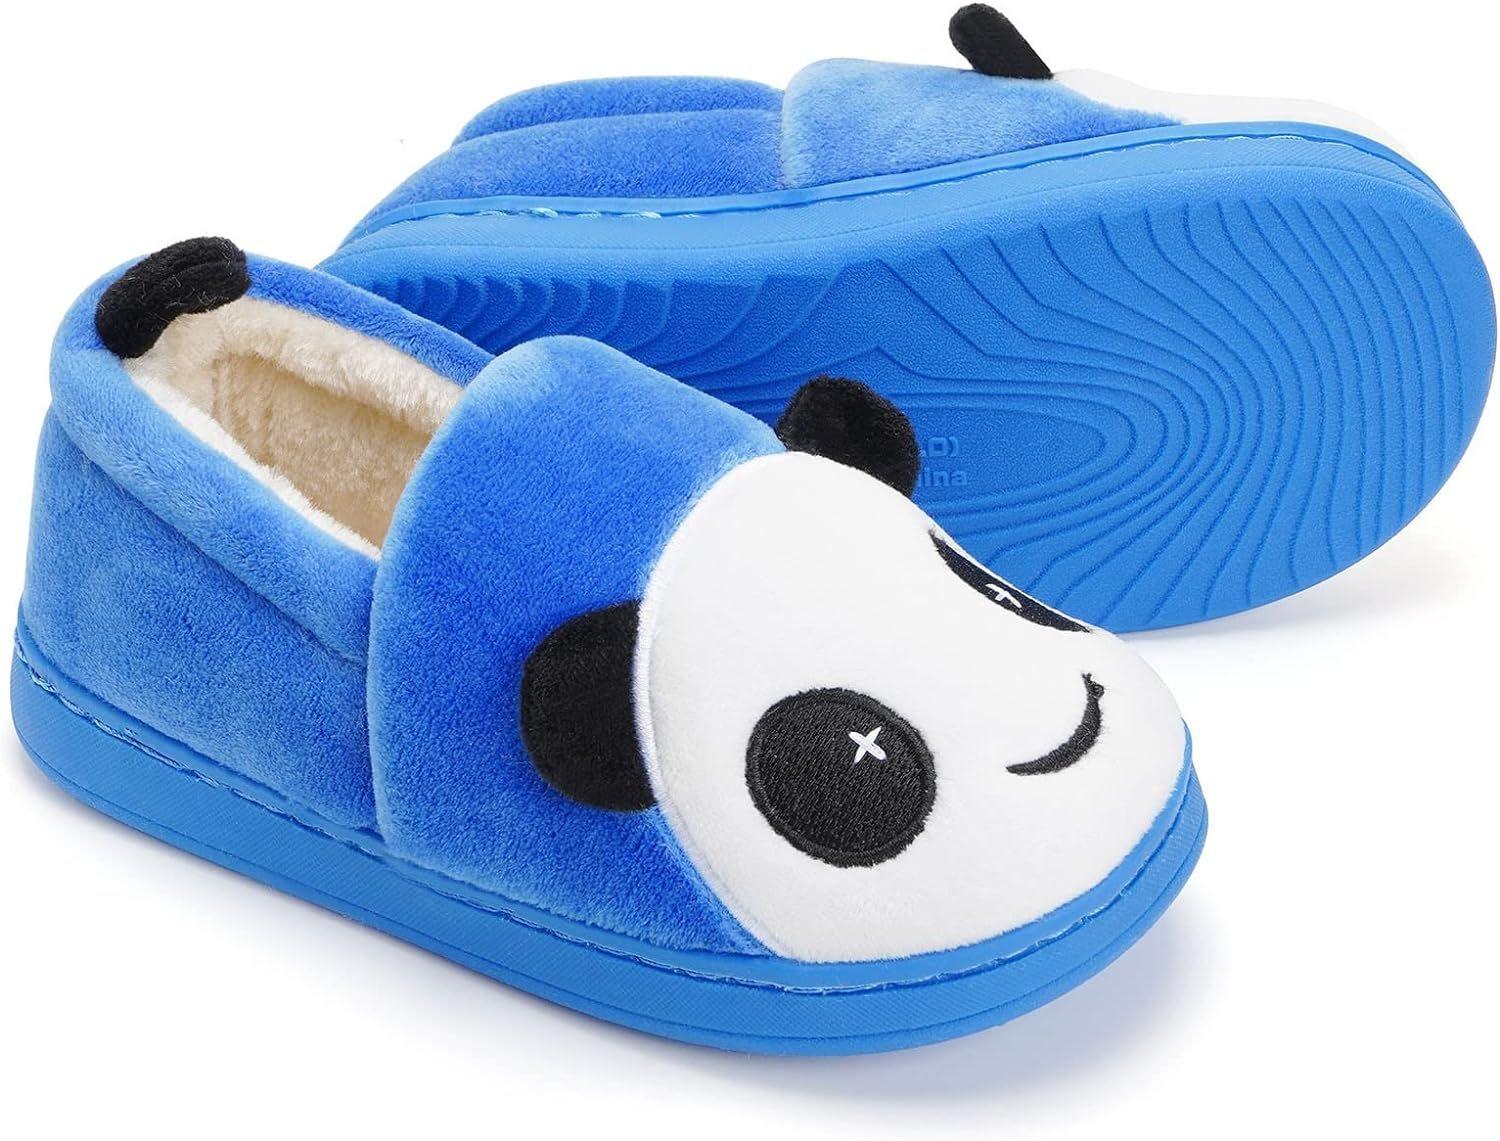 Chausson Fille Garçon Pantoufle Enfant Chaussures de Maison Hiver  Antidérapant Slippers, Bleu, 30/31 EU, Taille du fabricant 210